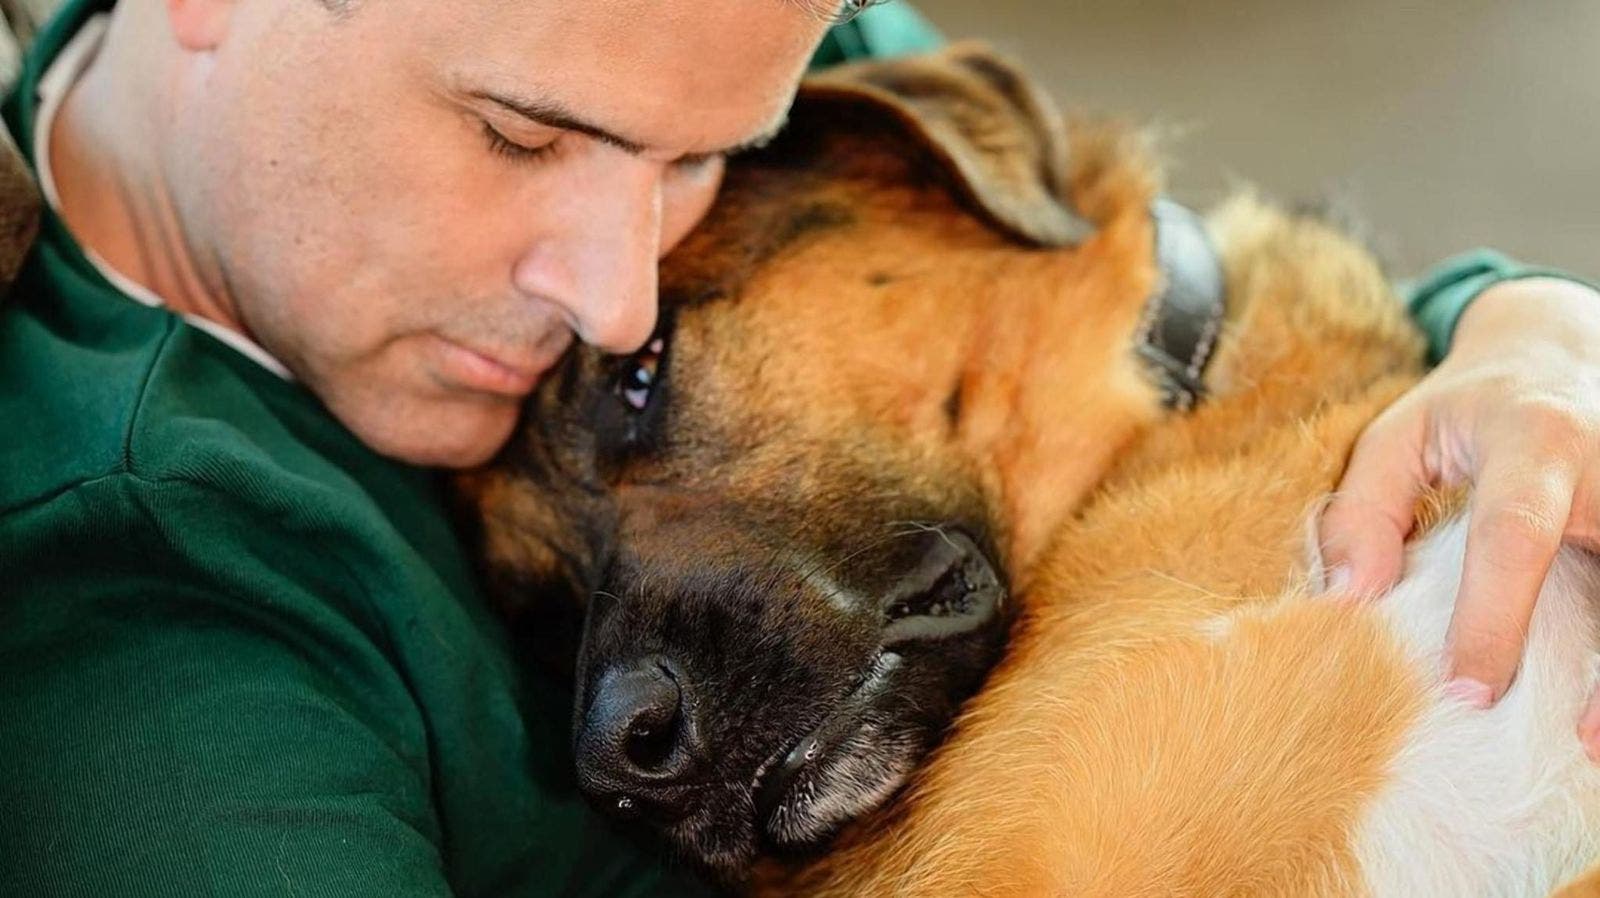 VIDEO Marco Antonio Regil rompe en llanto al dar a conocer la muerte de su amado perro Bernie